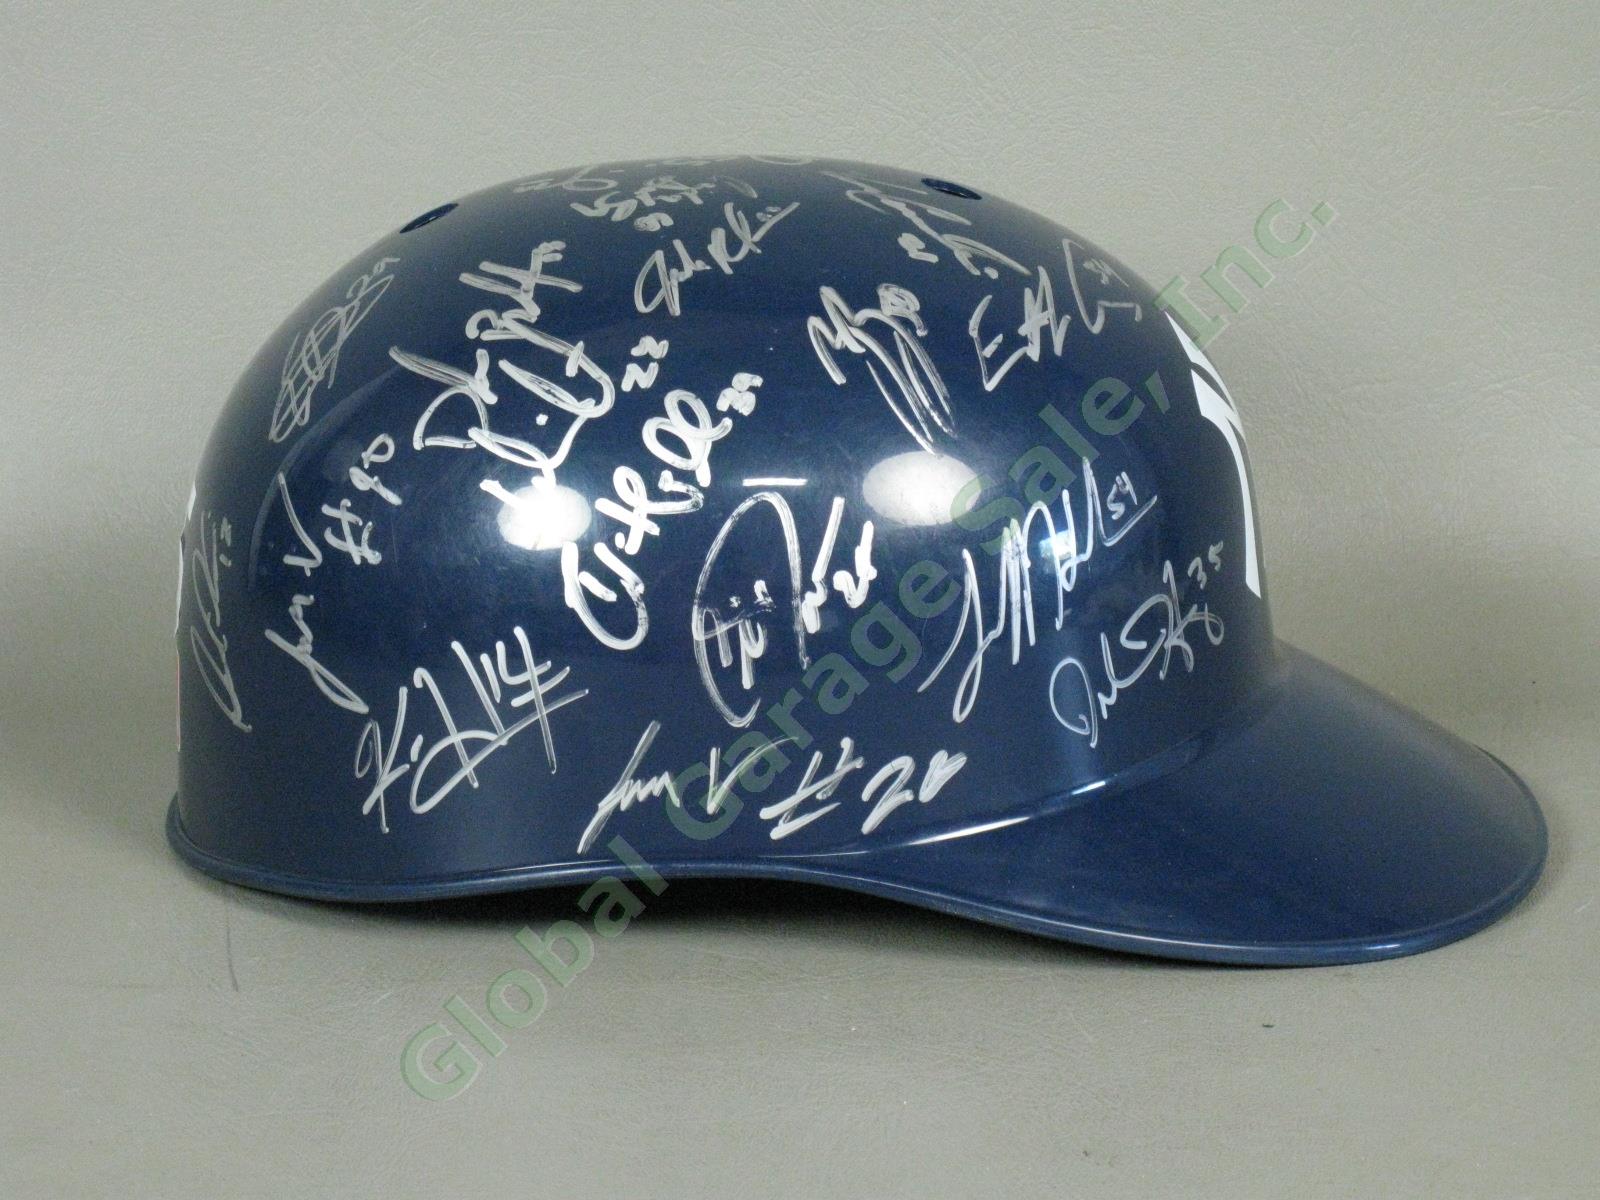 2015 Staten Island Yankees Team Signed Baseball Helmet MiLB MLB NYPL New York NR 1